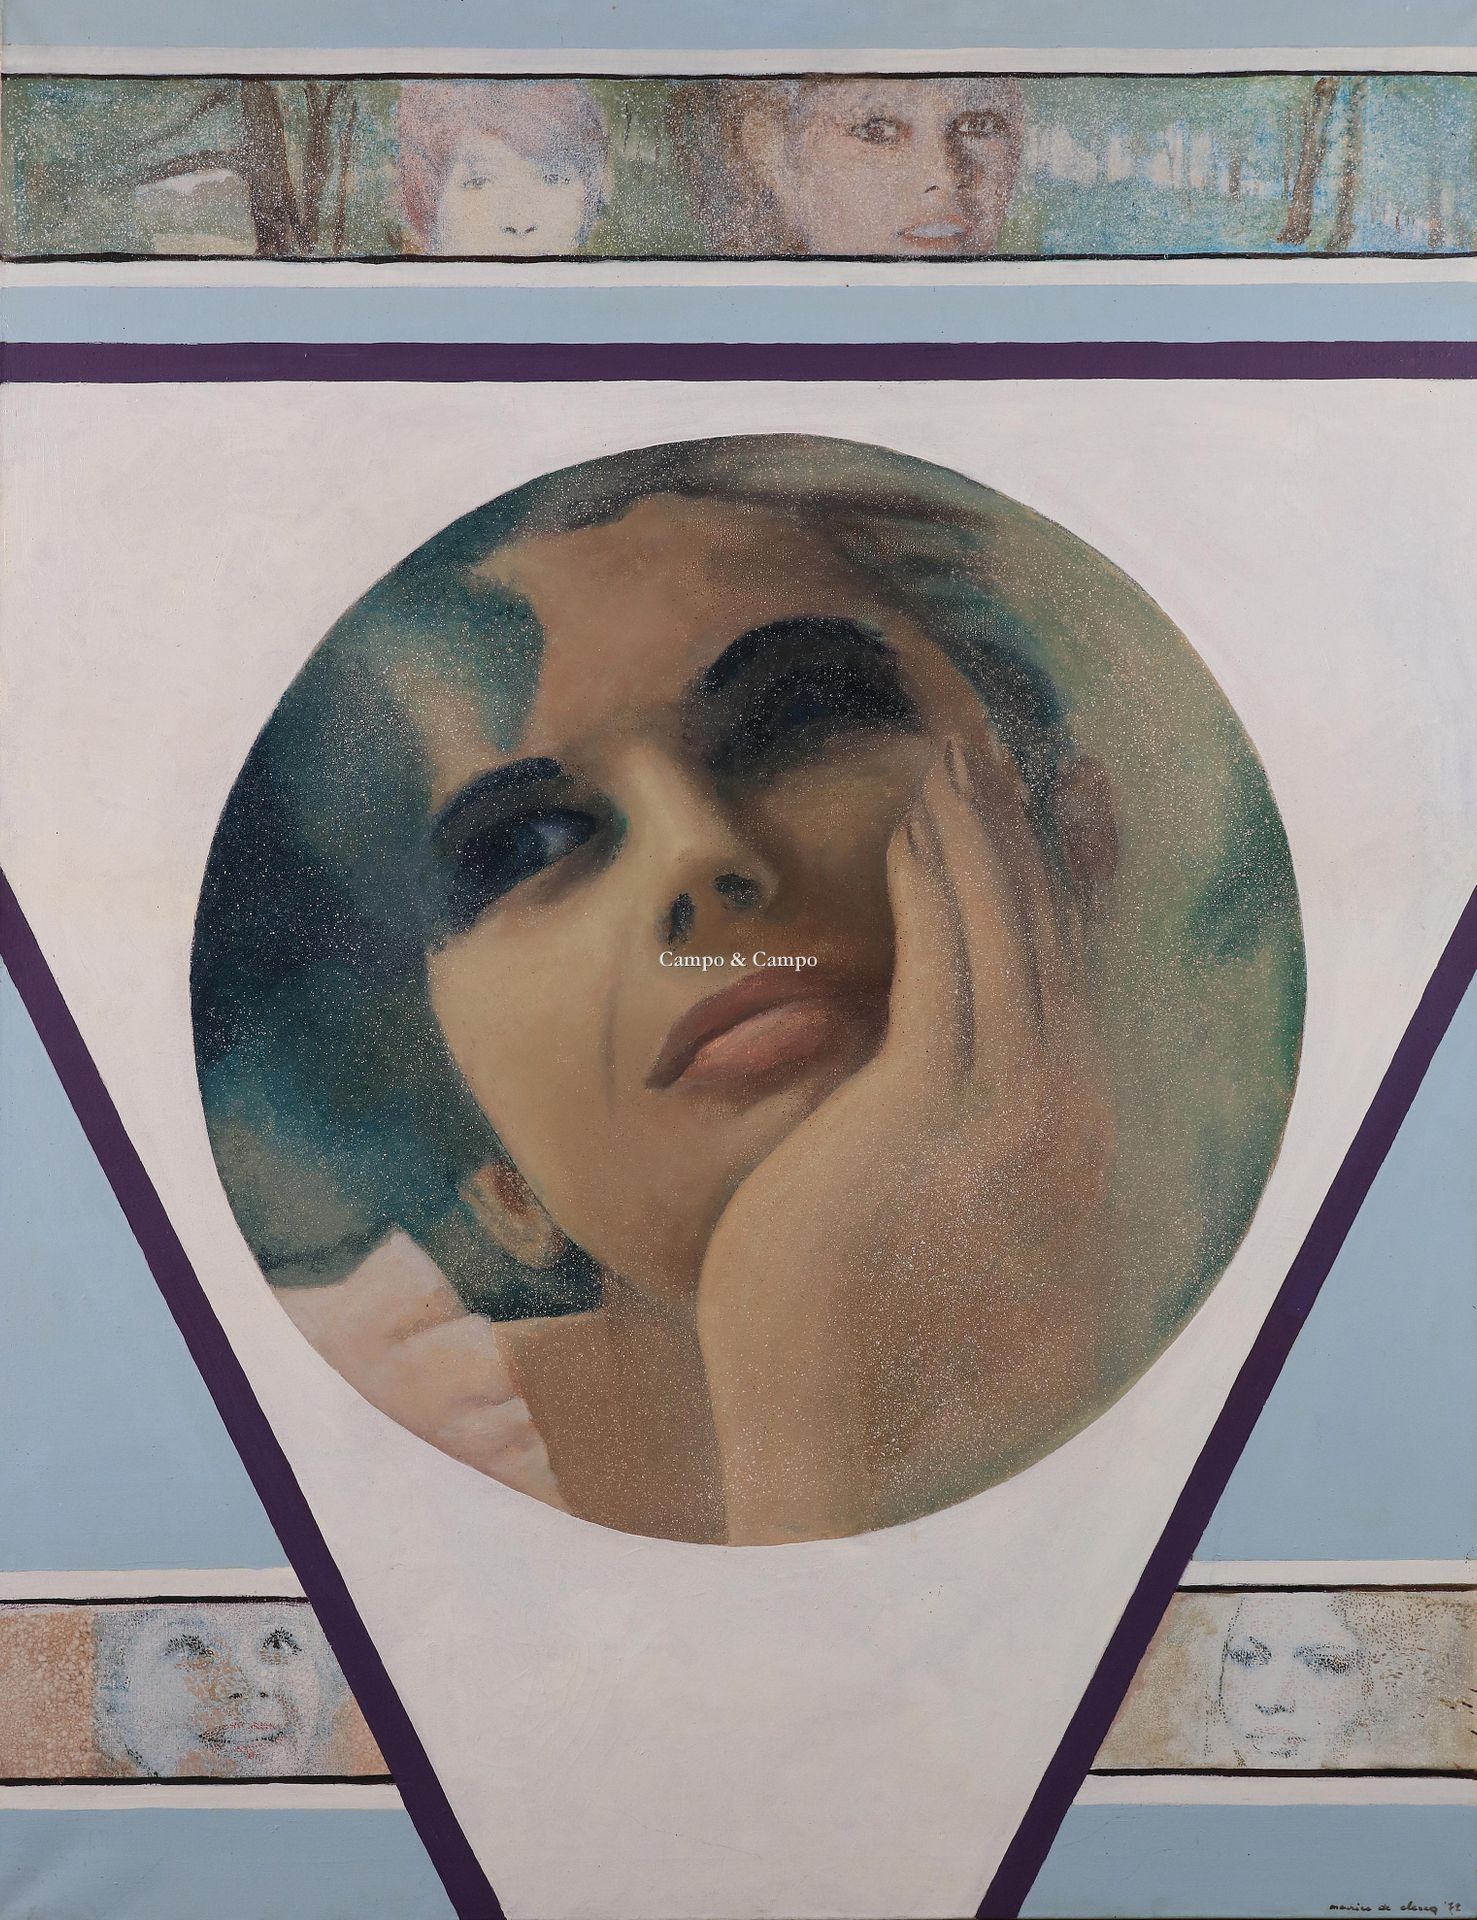 DE CLERCQ MAURICE 1918-1980 遐想
我的爱人
油画。布面油画
获取。1972年 130 x 100 cm